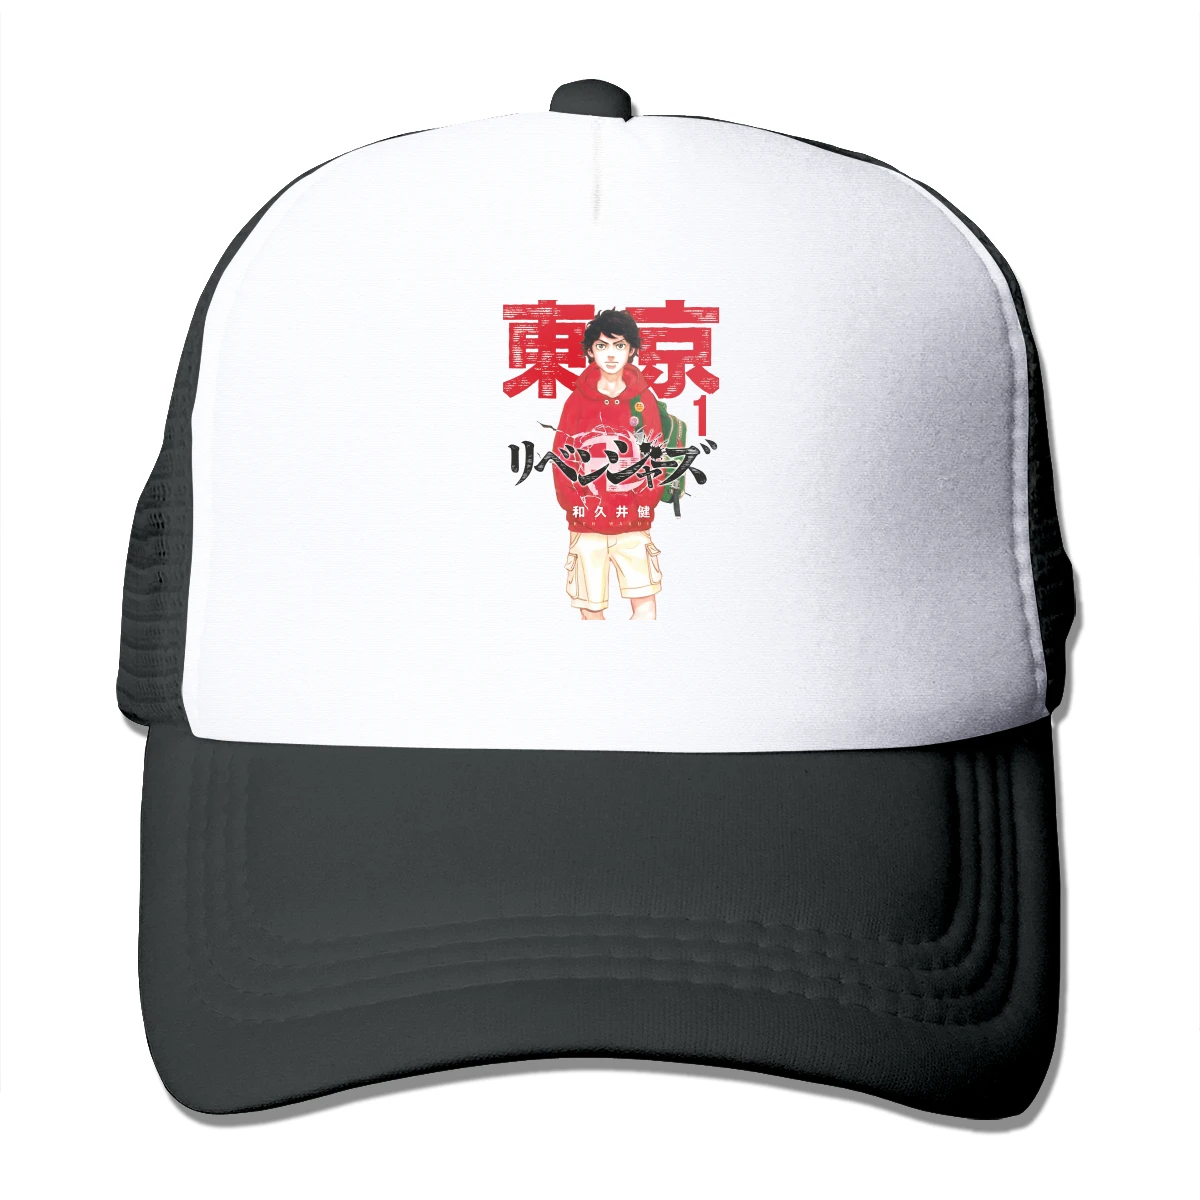 

Бейсболка Takemichi Hanagaki, приключения Мстители Токио, аниме сетчатая шапка для мужчин и женщин, стильные головные уборы, Регулируемая Кепка s